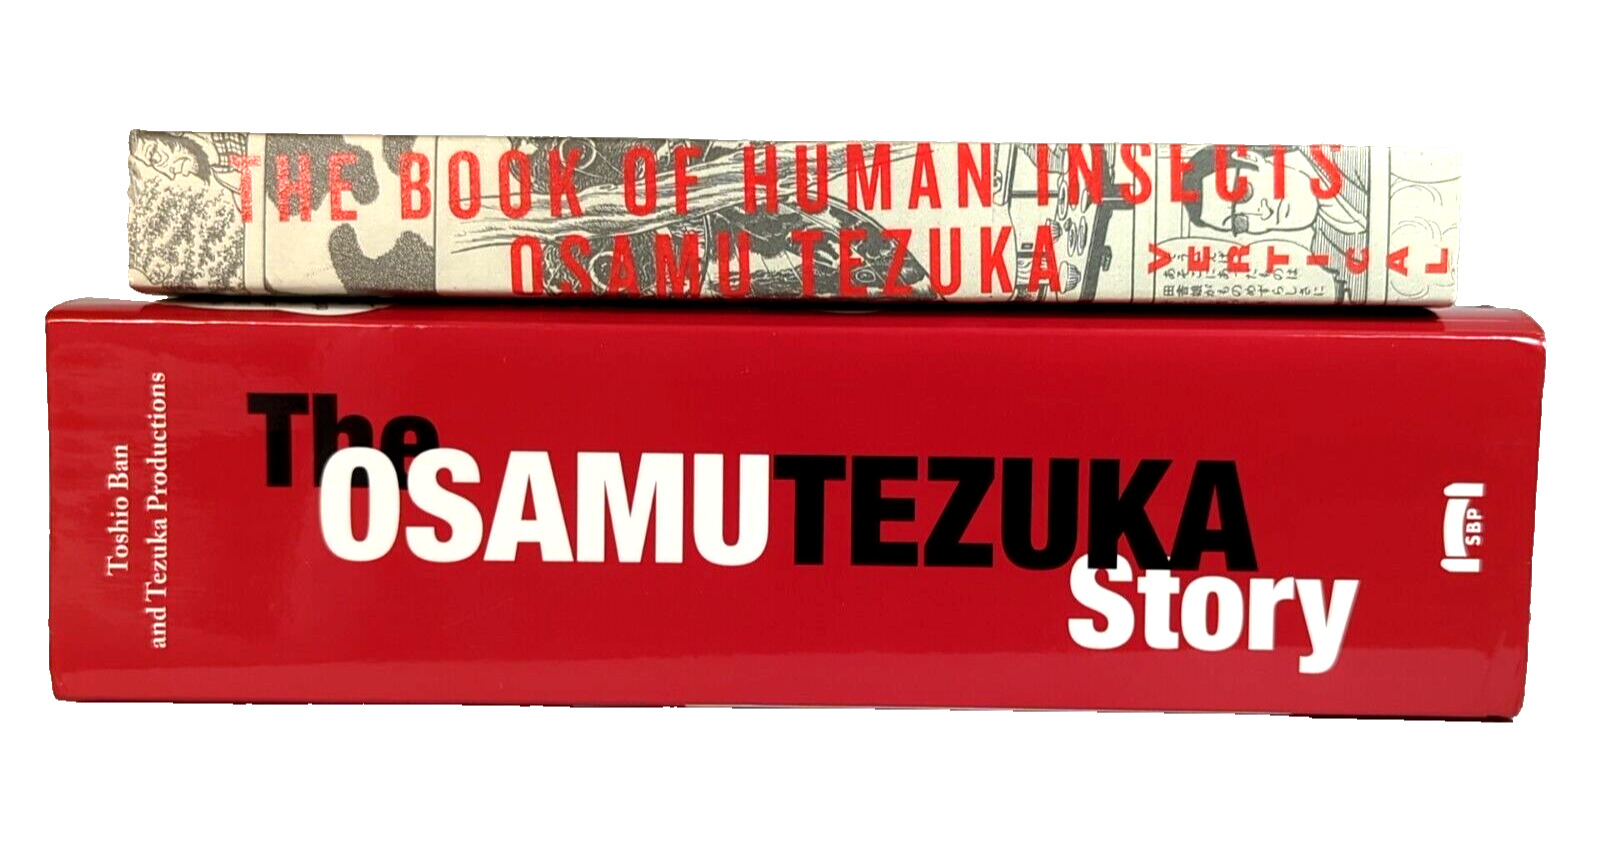 The Osamu Tezuka Story And The Book Of Human Insects Manga Lot